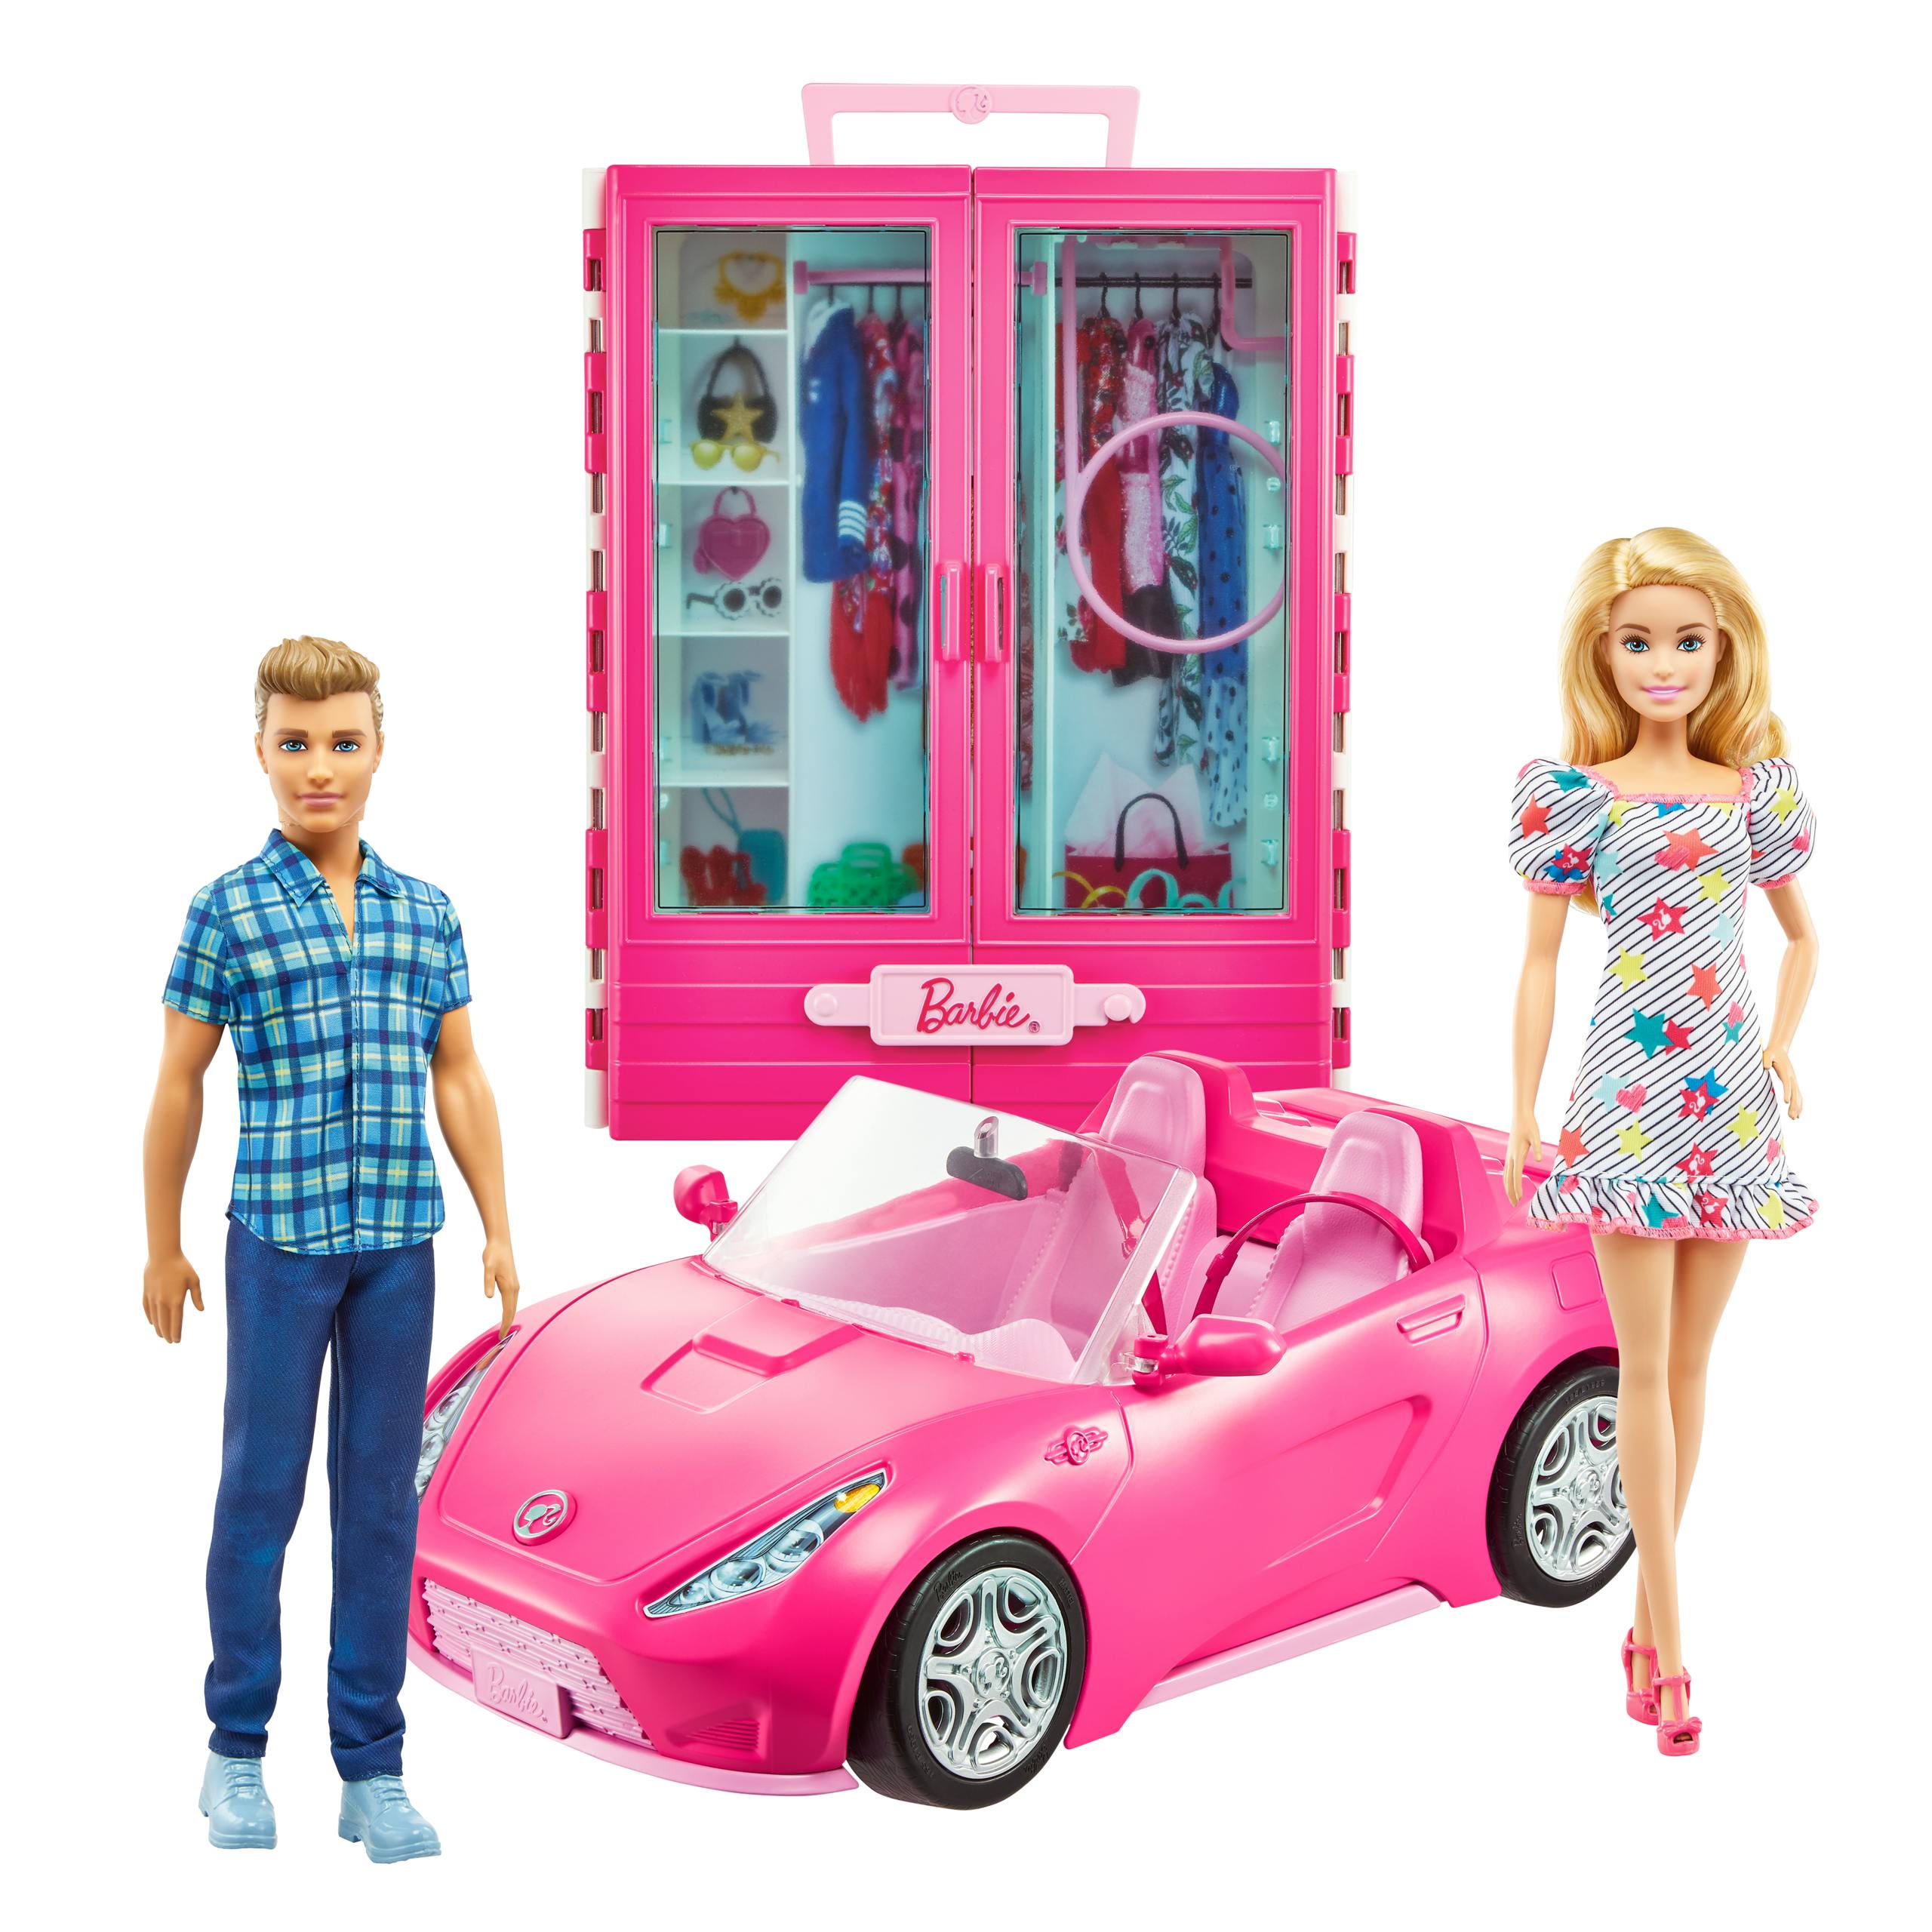 lint Kinderpaleis pop Barbie + Ken pop met kleerkast en cabrio auto